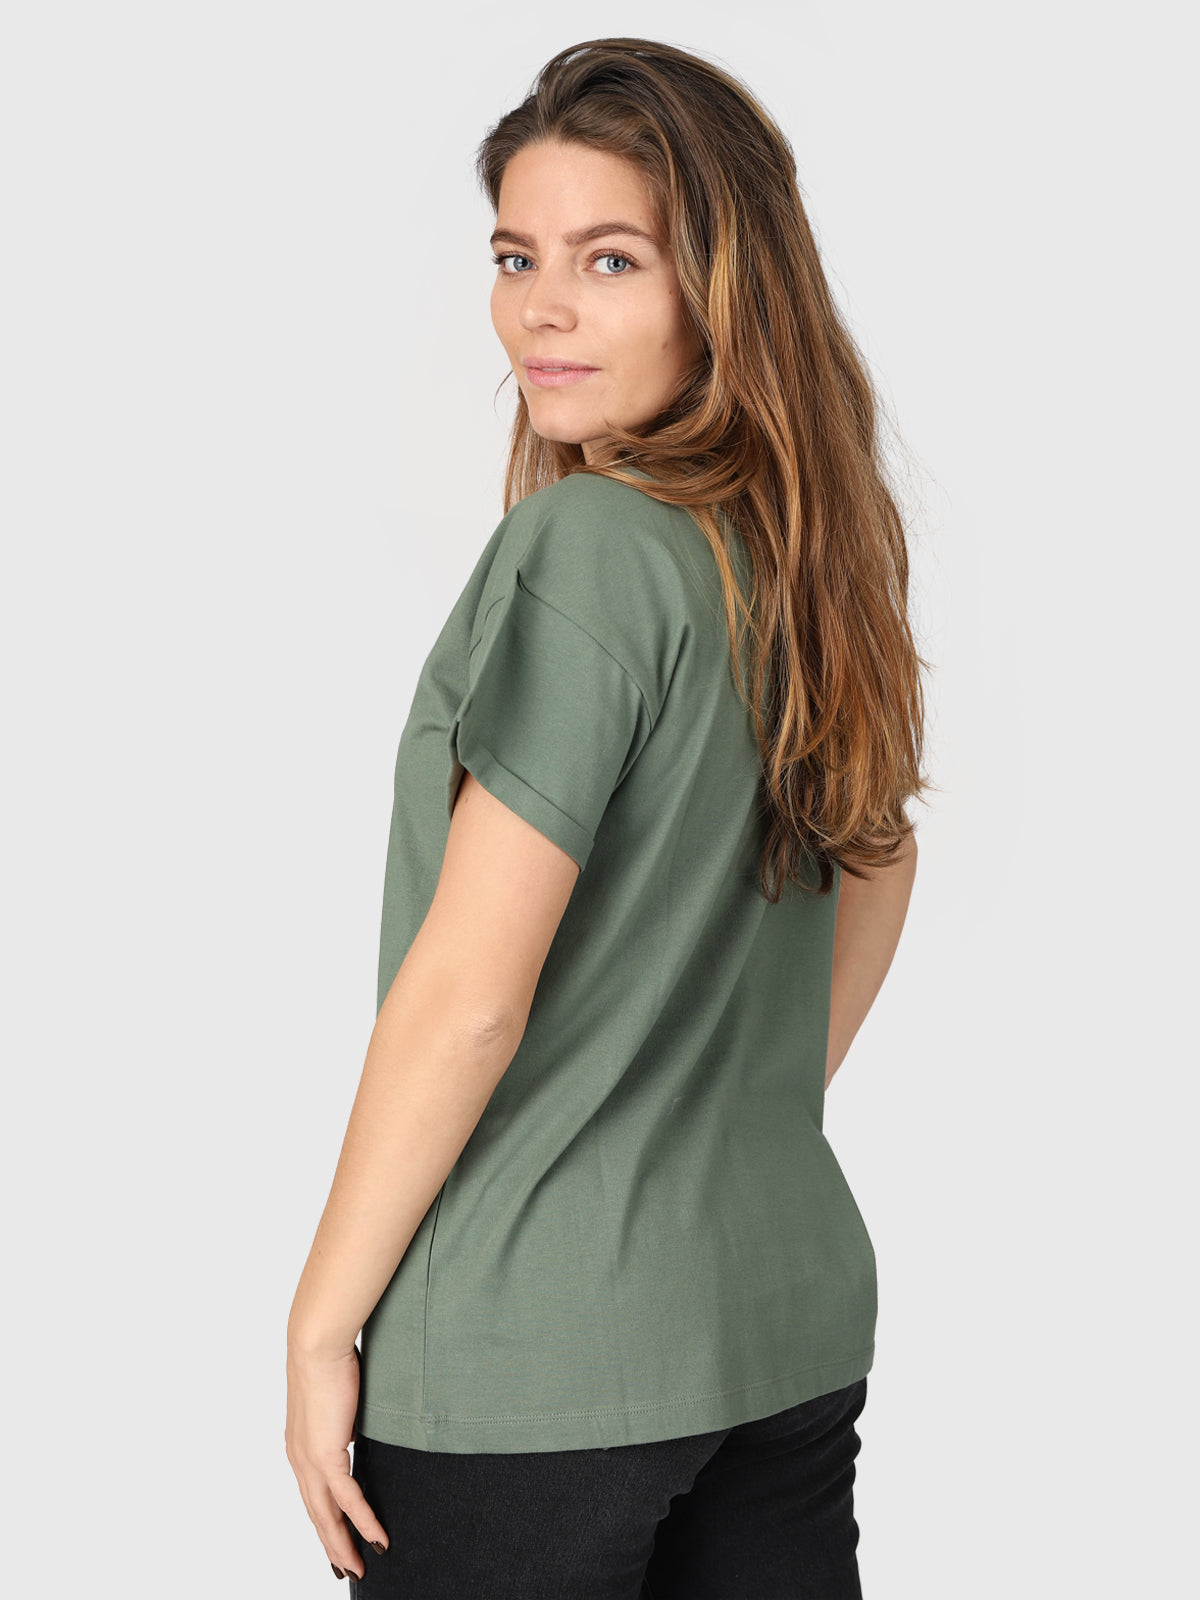 Samira-R Damen T-Shirt | Grün